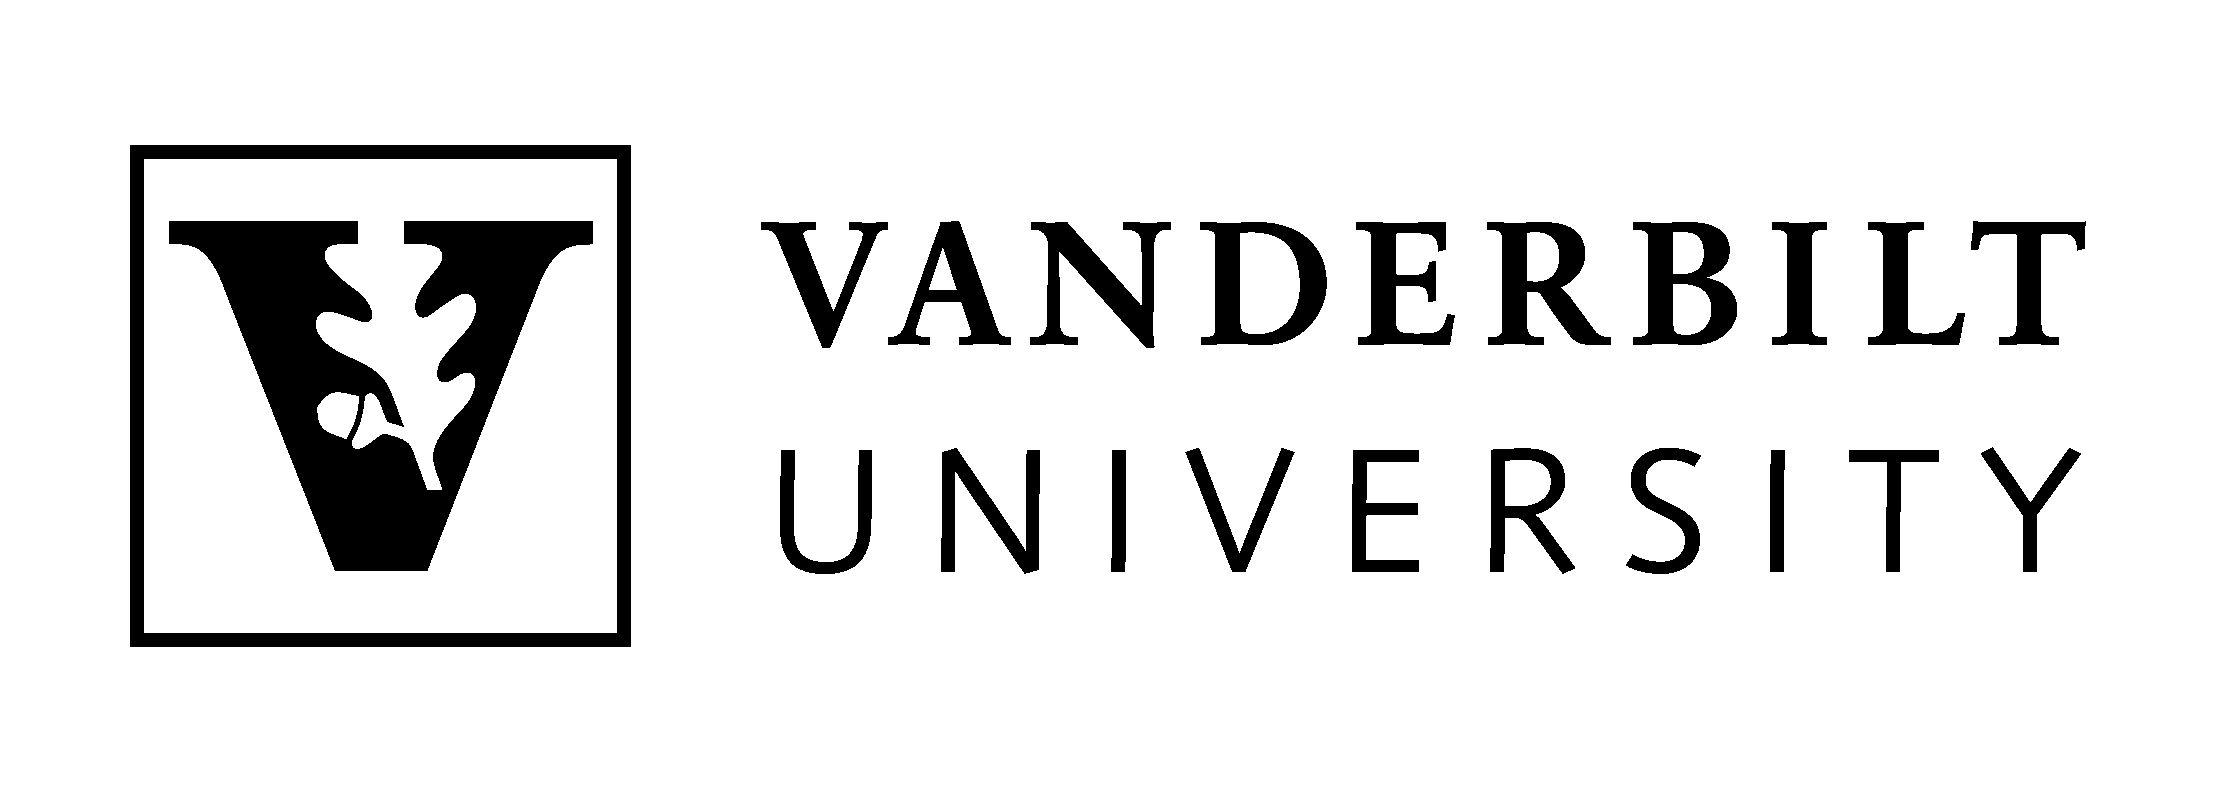 Vanderbilt Logo - Vanderbilt university Logos